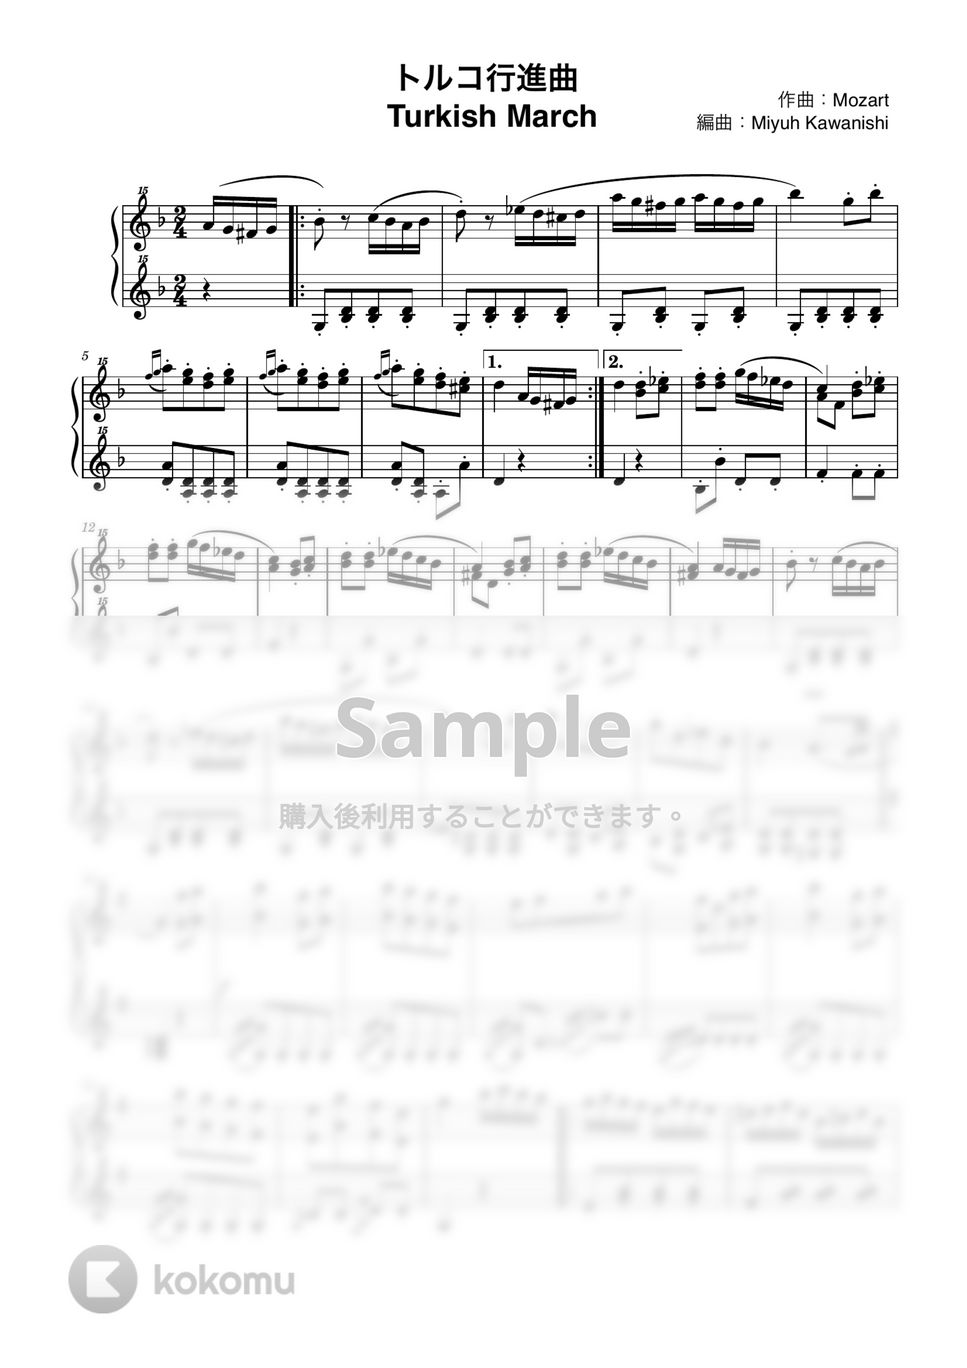 モーツァルト - トルコ行進曲 (トイピアノ / クラシック / 32鍵盤) by 川西三裕